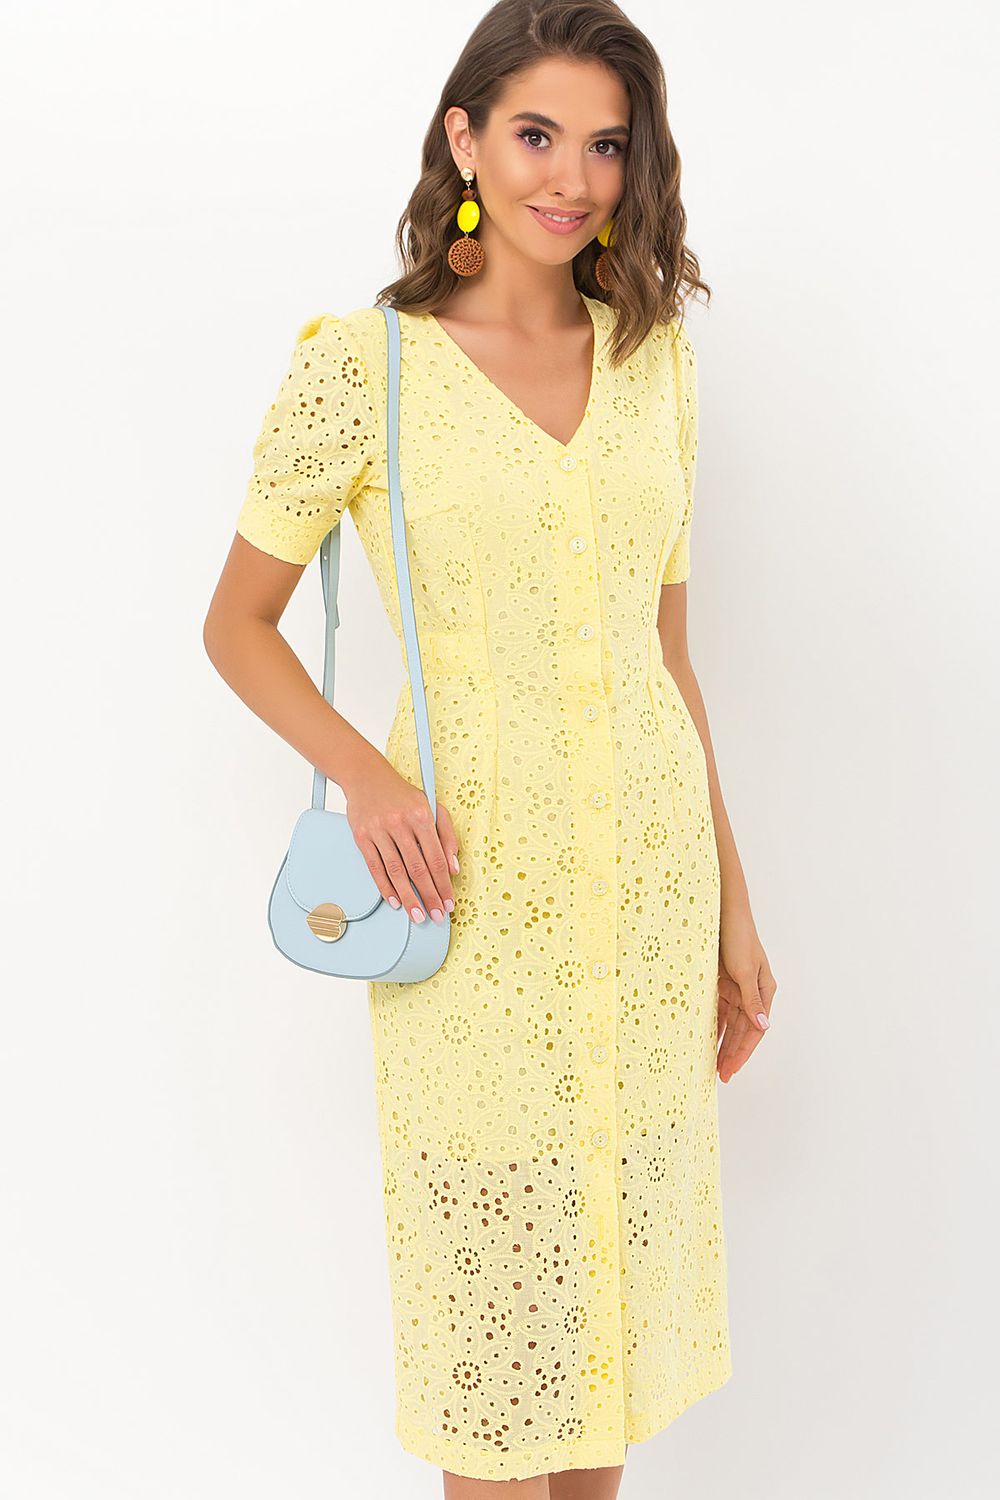 Модное летнее платье из прошвы желтое - фото